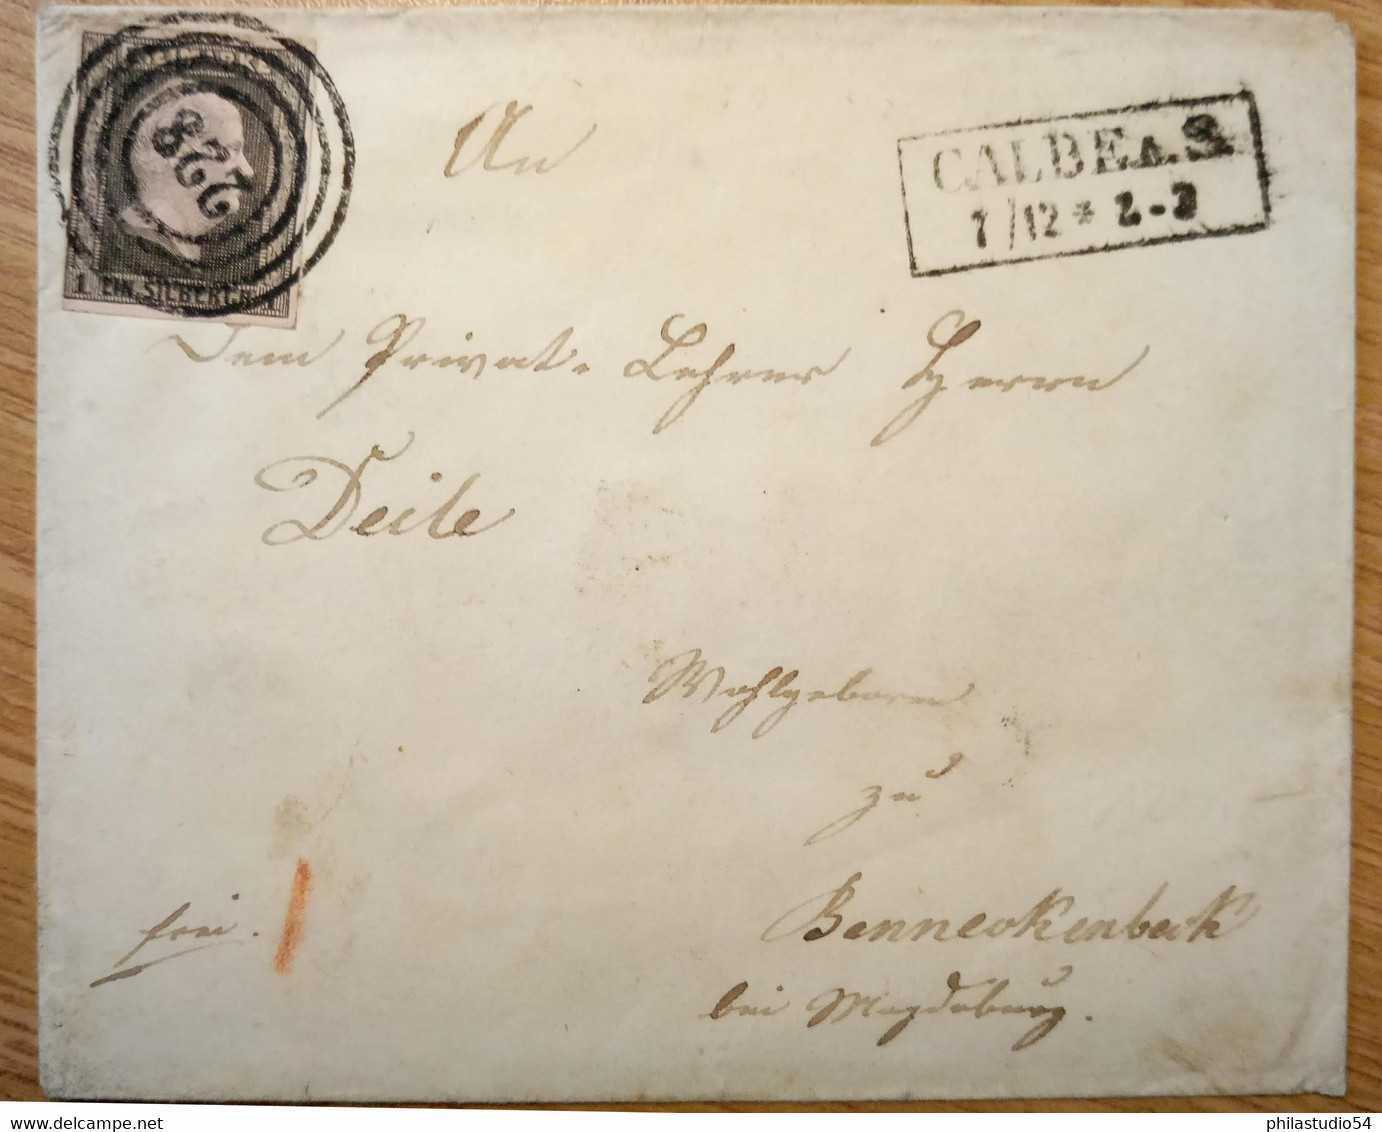 1851, Umschlag Mit 1 Sgr., Klarer Nummernstempel "228" Mit Ra2 "CALBE 1/12" - Cartas & Documentos